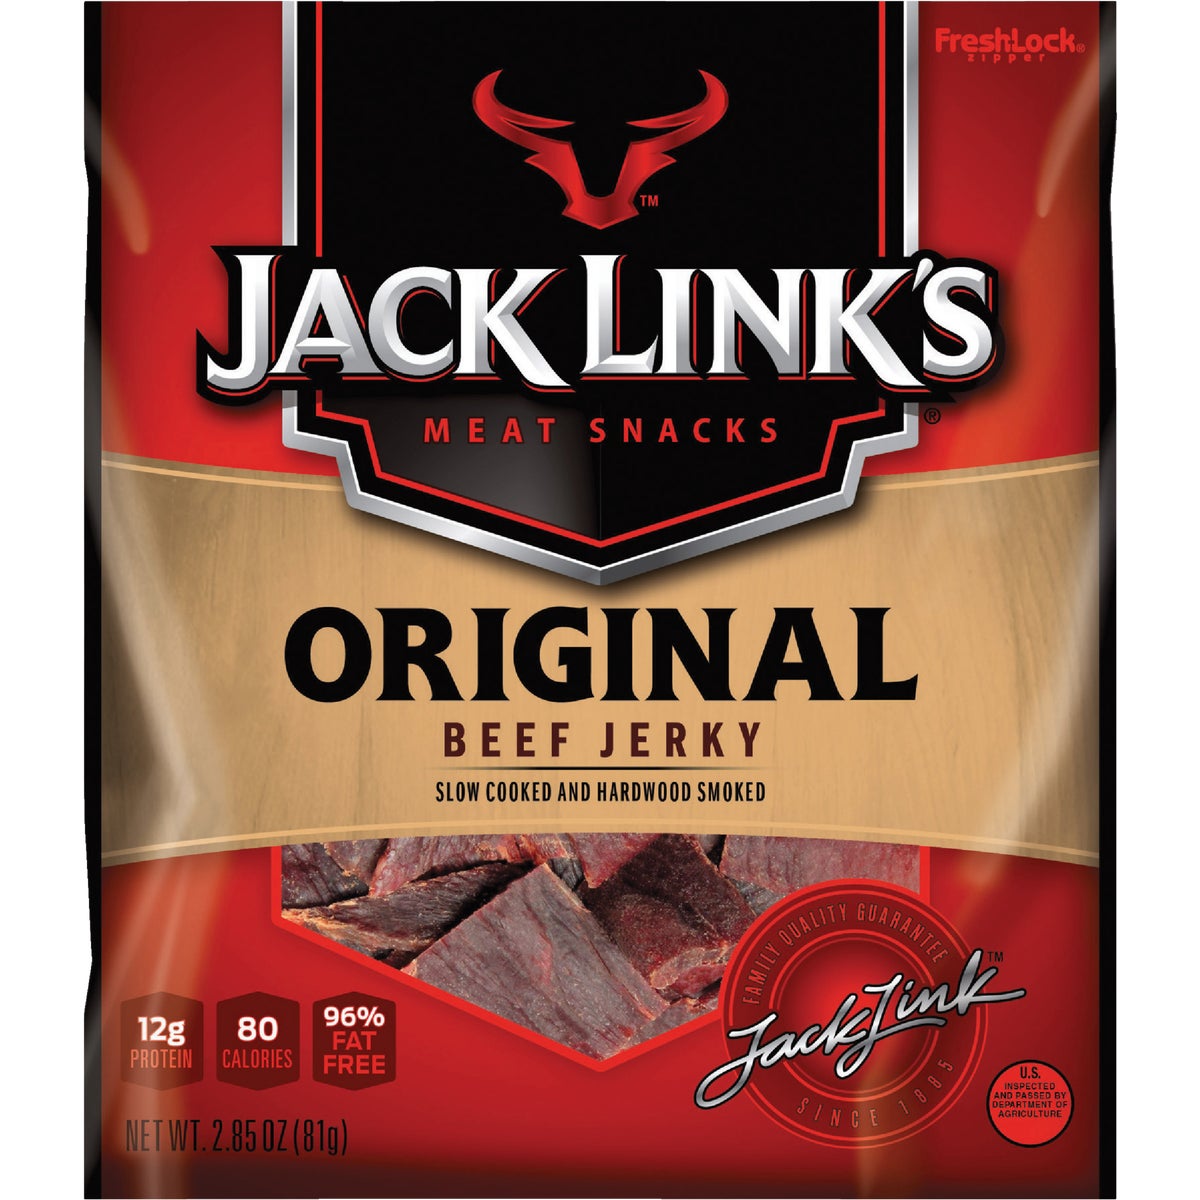 Jack Link's 2.85 Oz. Original Beef Jerky